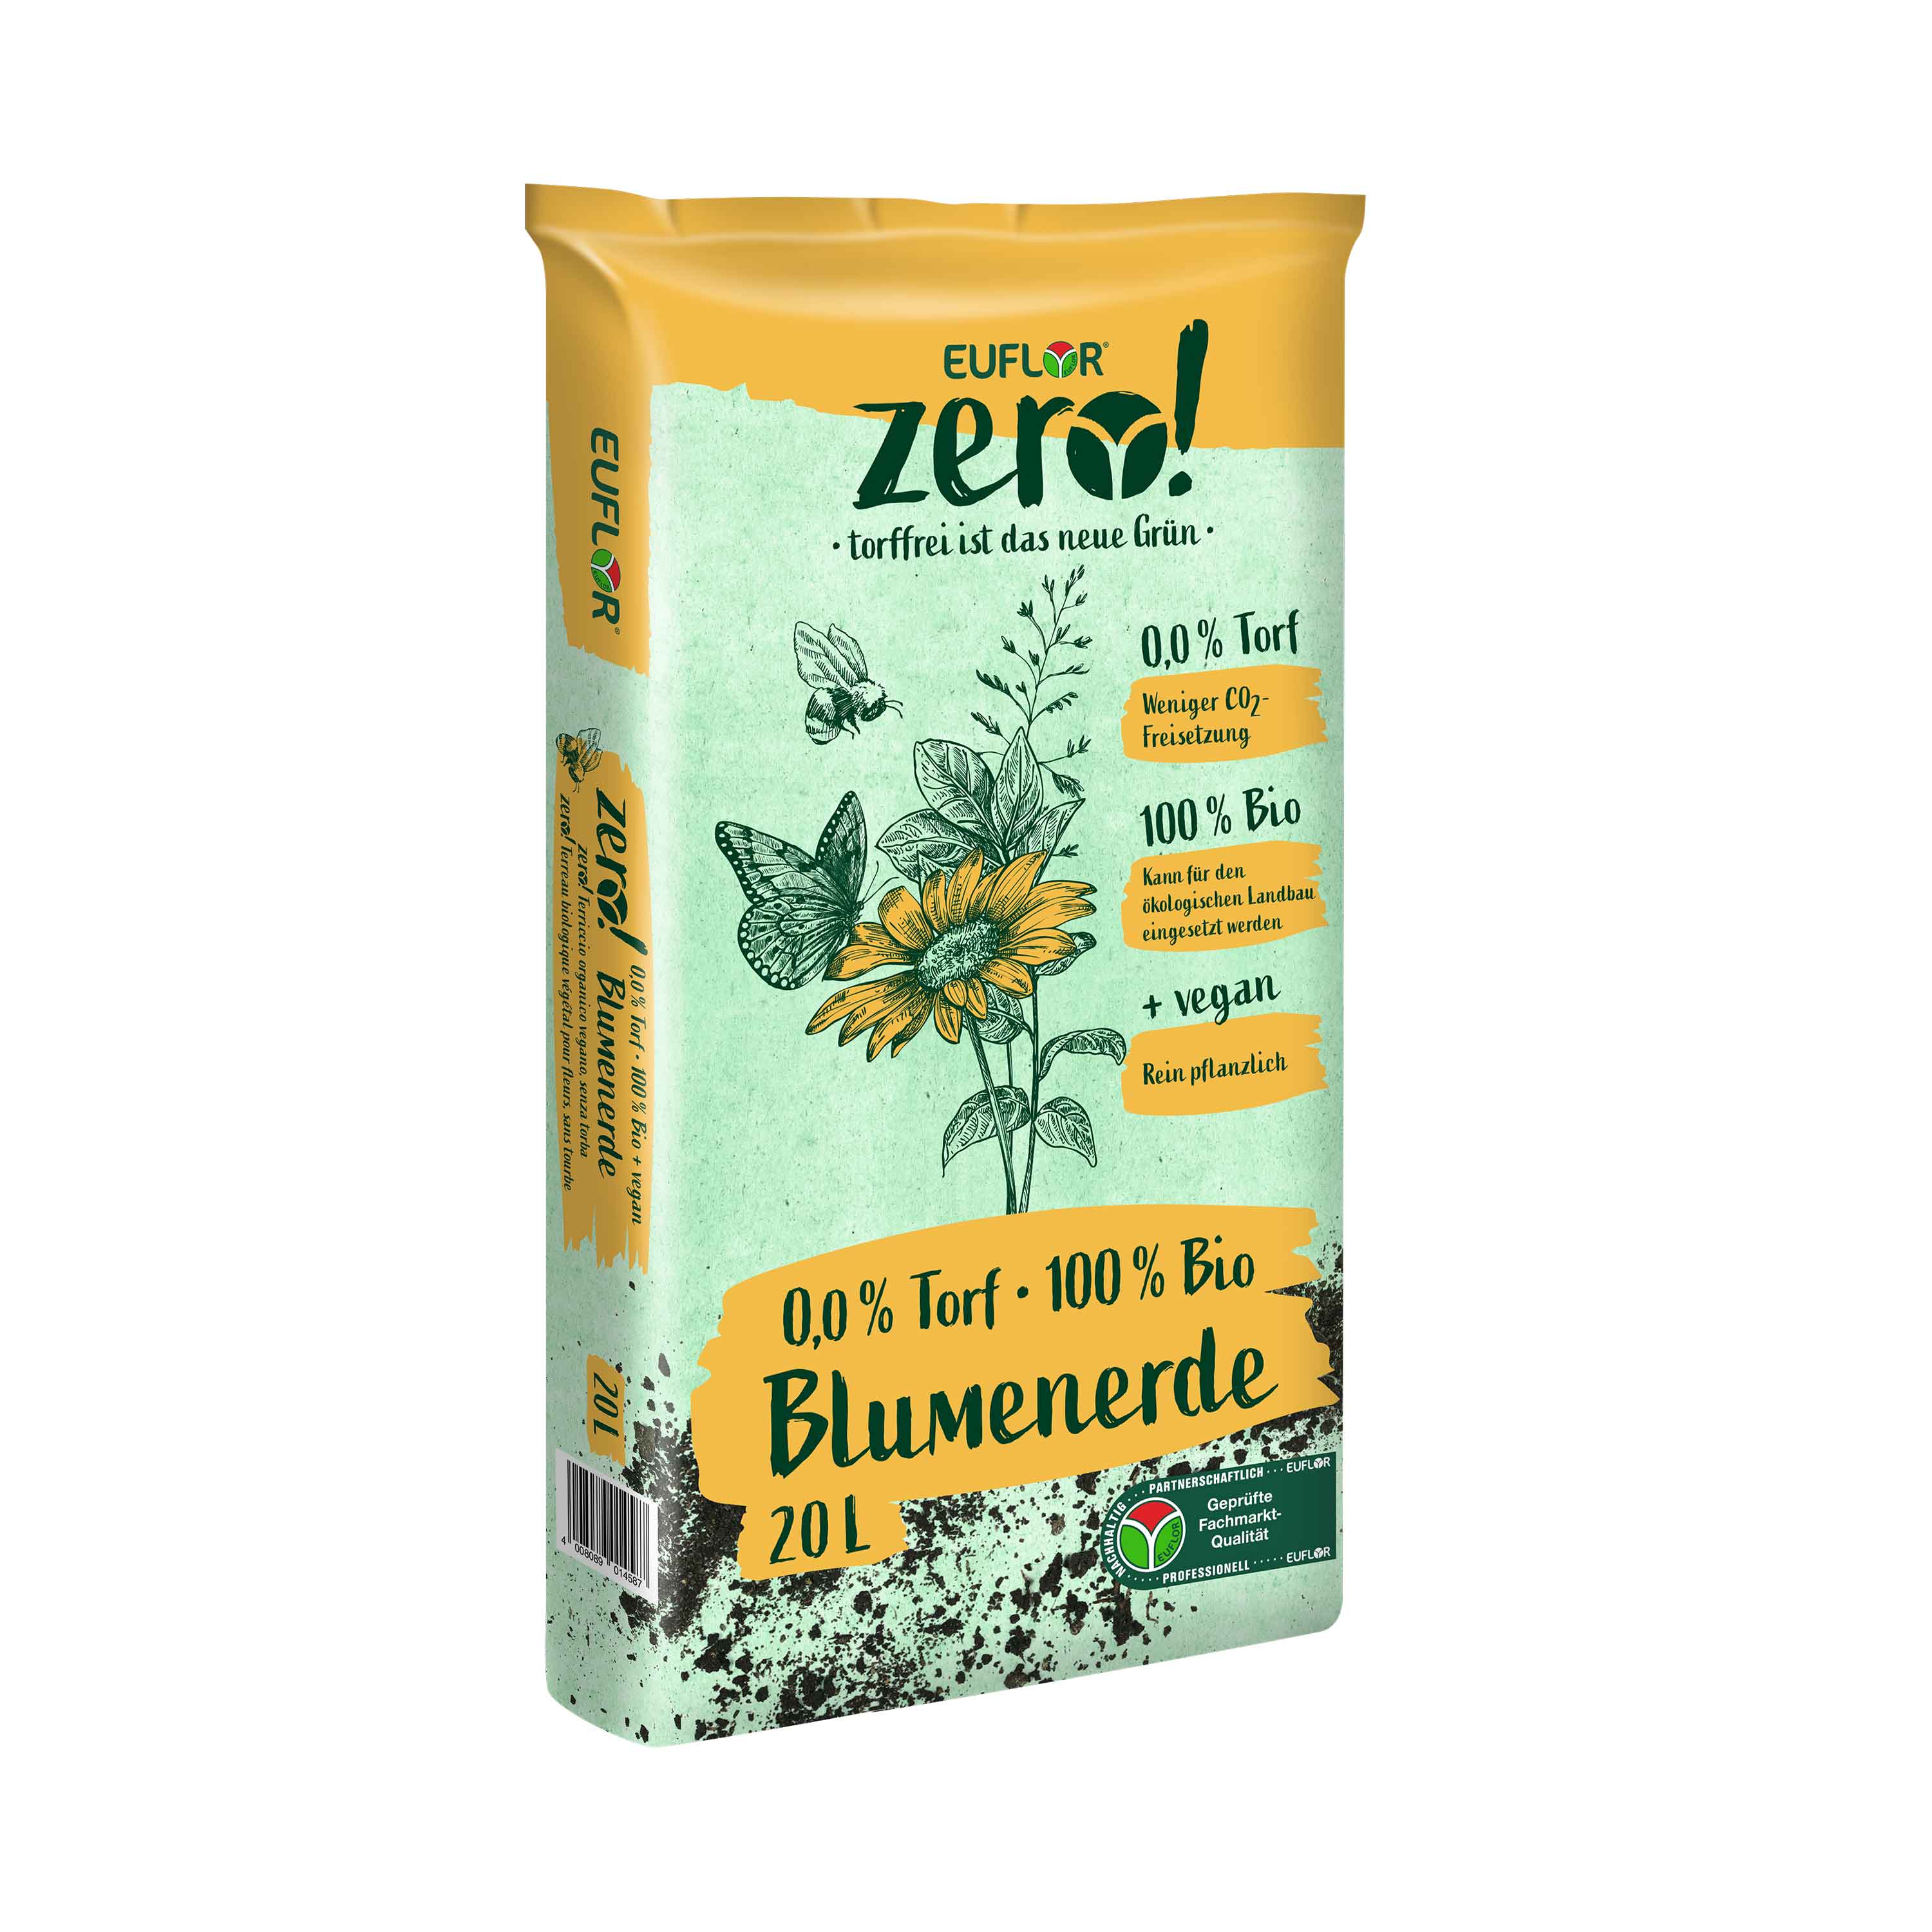 EUFLOR Bio Blumenerde - torffrei, vegan, zero! - 20 Liter Sack - 